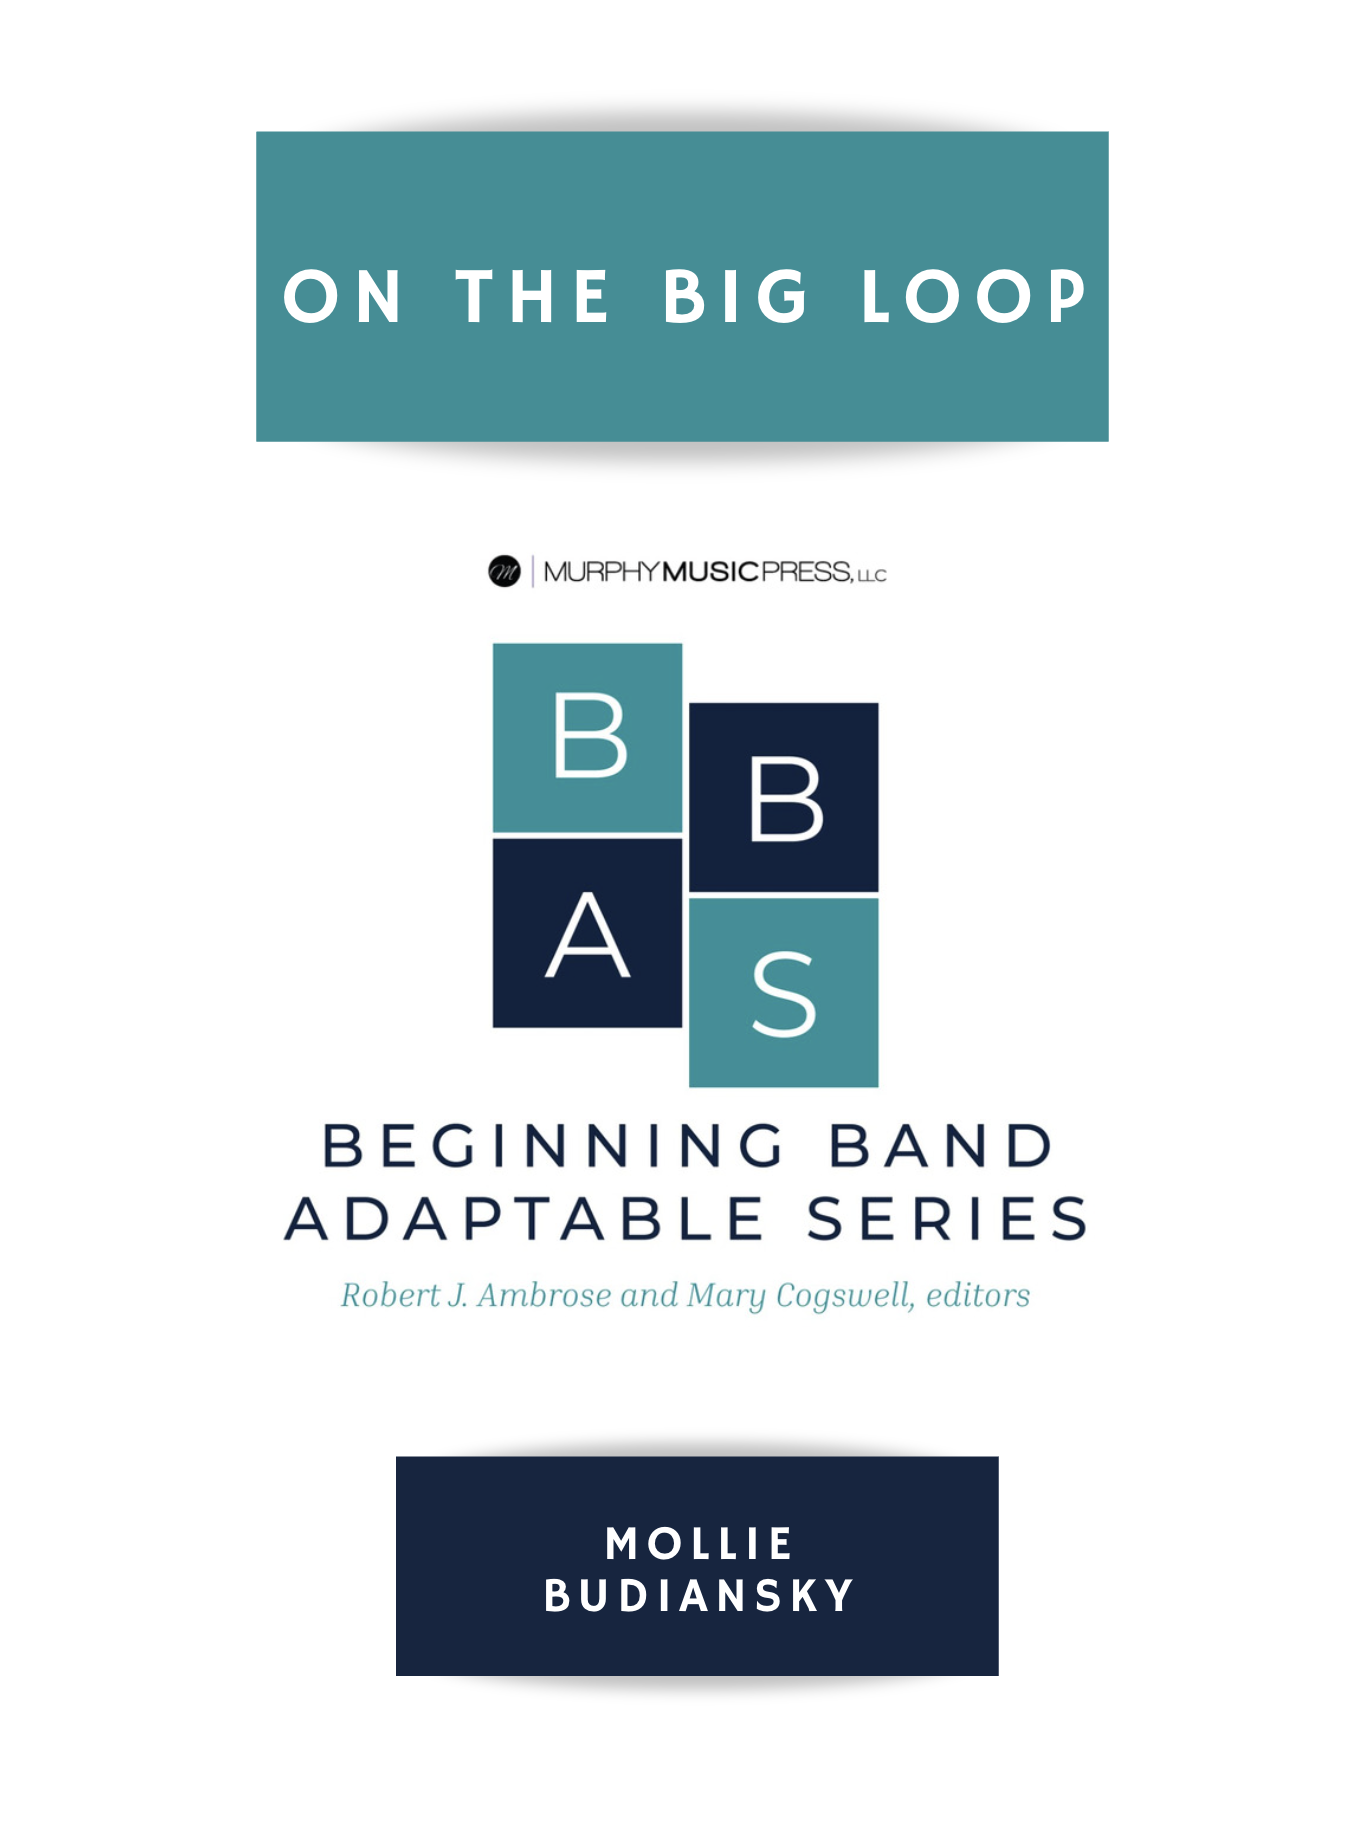 On The Big Loop by Mollie Budiansky